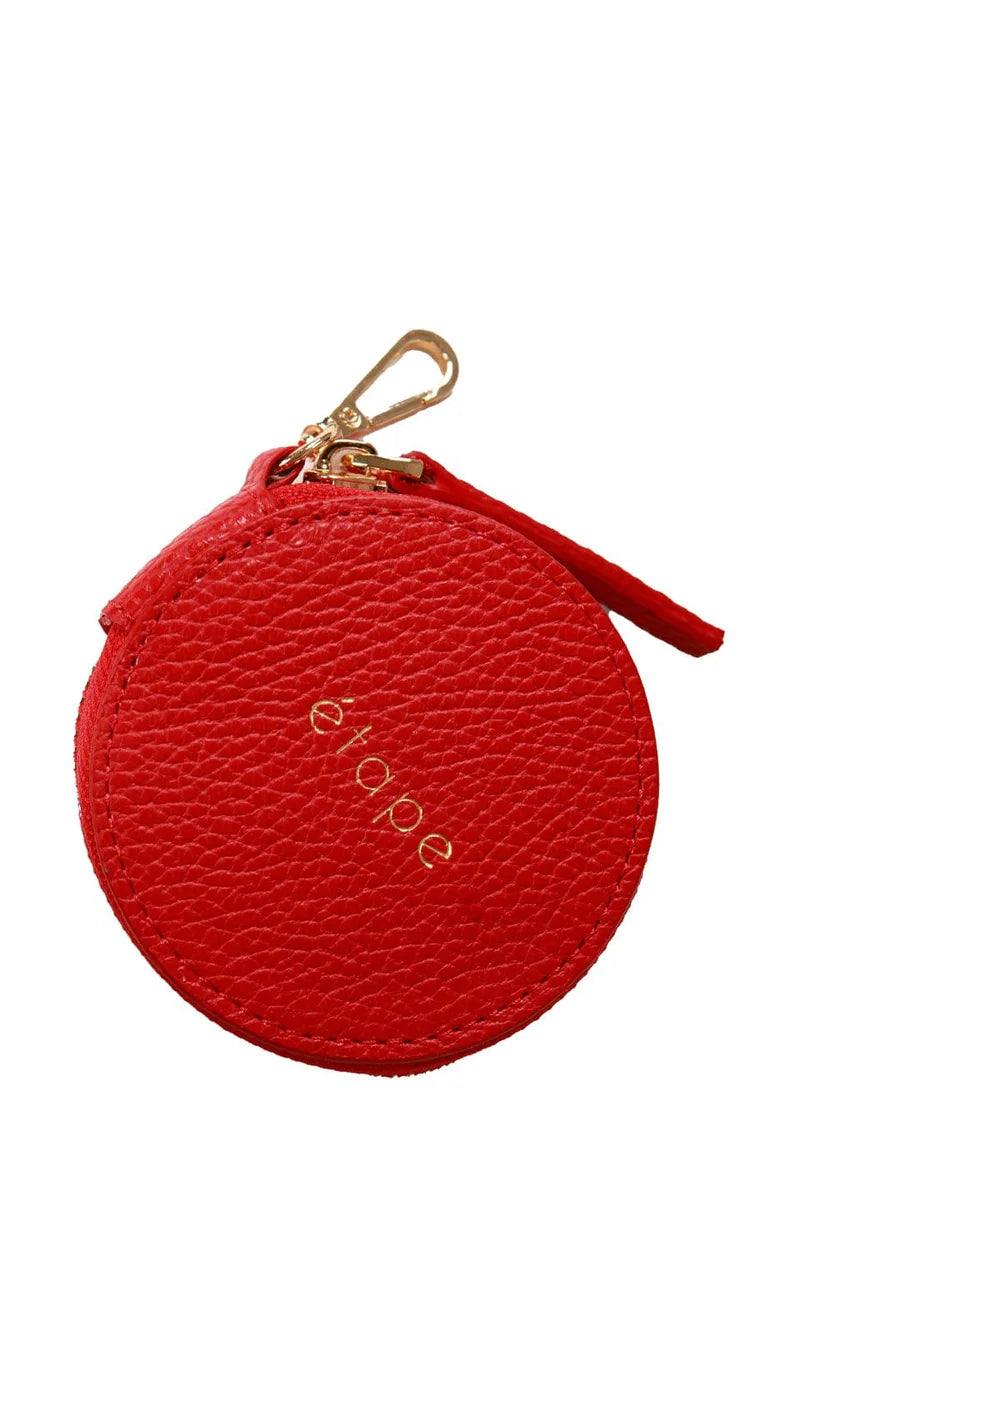 Жіночий гаманець Etape, червоний, (Etape), іграшка гаманець червоний